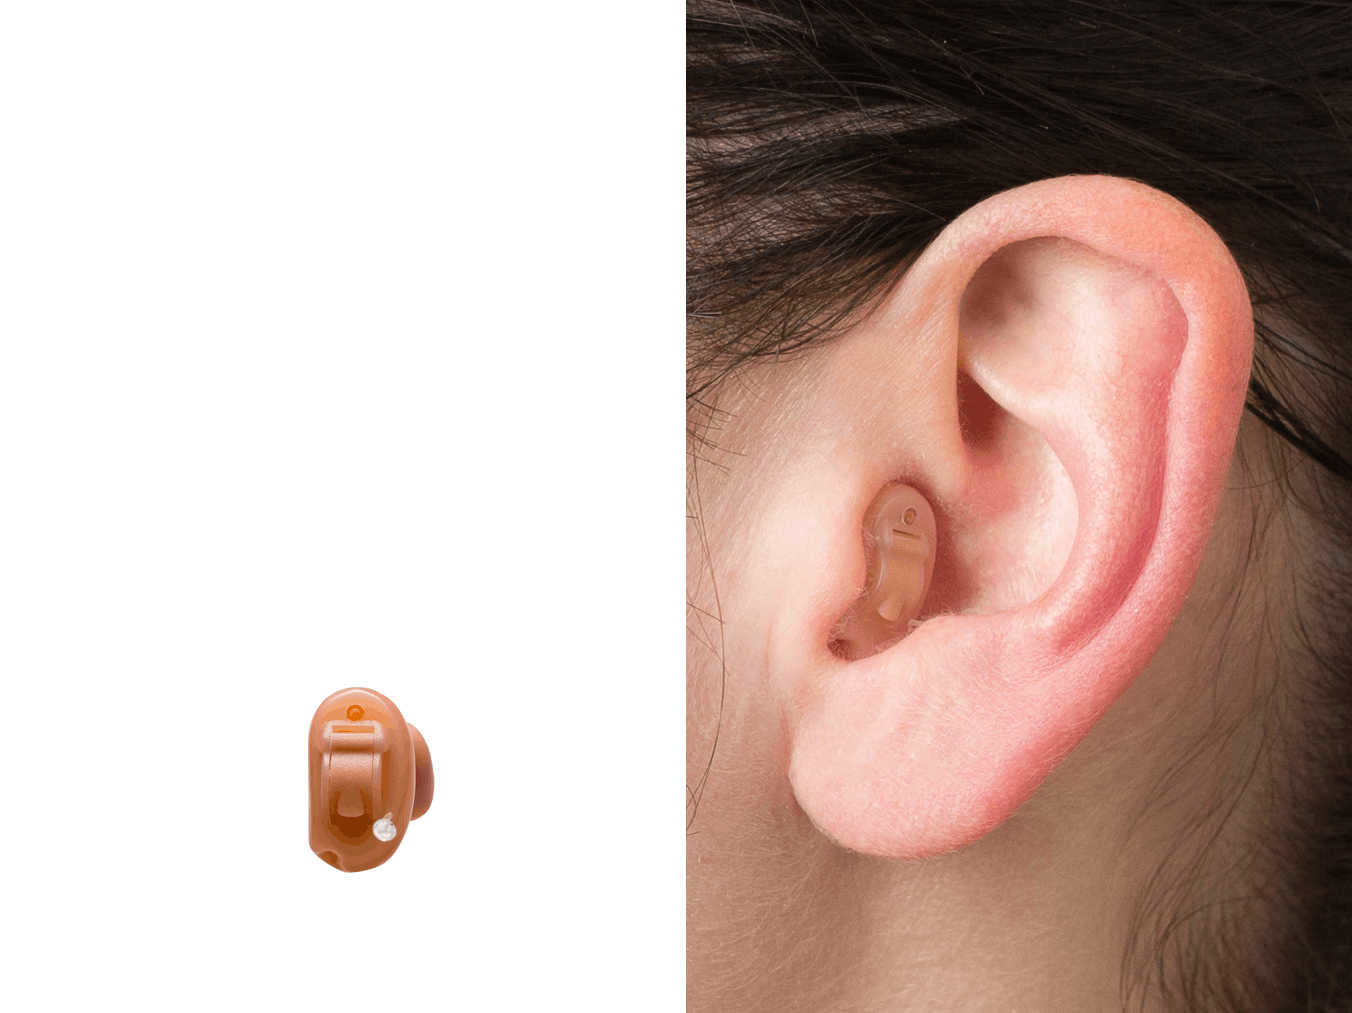 Helix hearing слуховой аппарат. Аппарат слуховой внутриушной конха. «Невидимый» слуховой аппарат (IIC). Слуховой аппарат внутриушной невидимый.